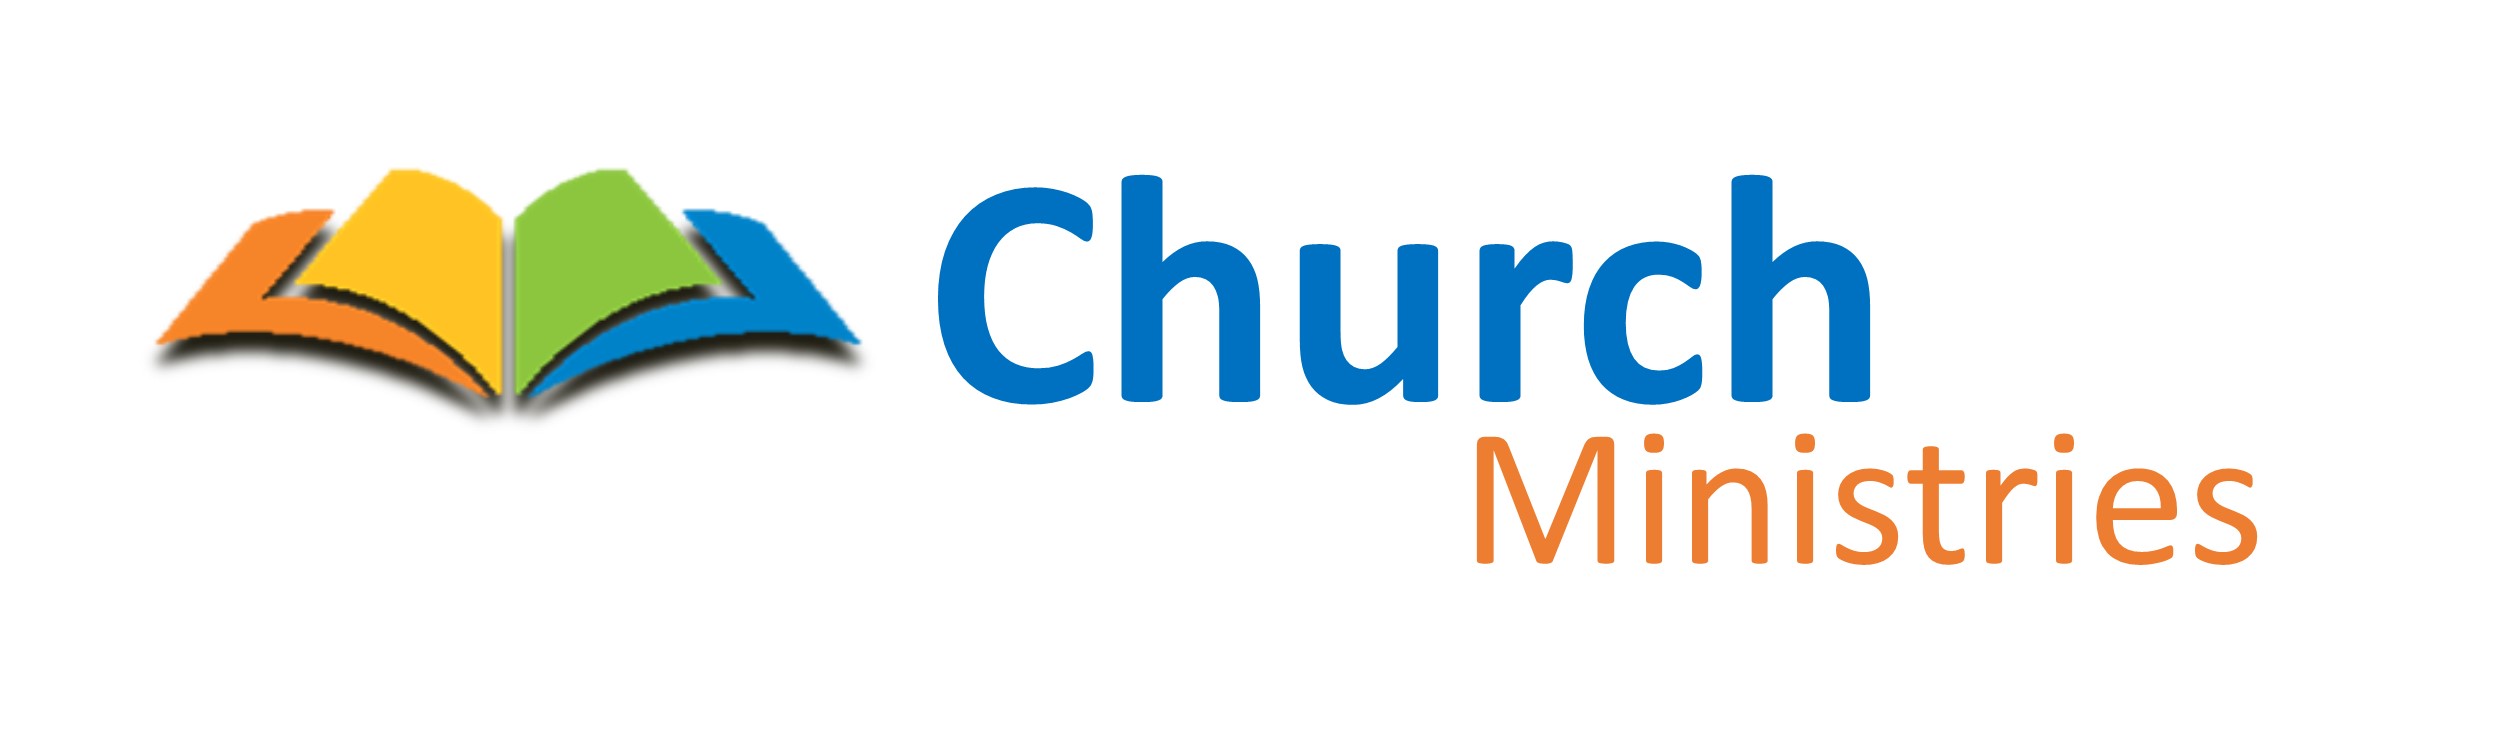 Church Ministries